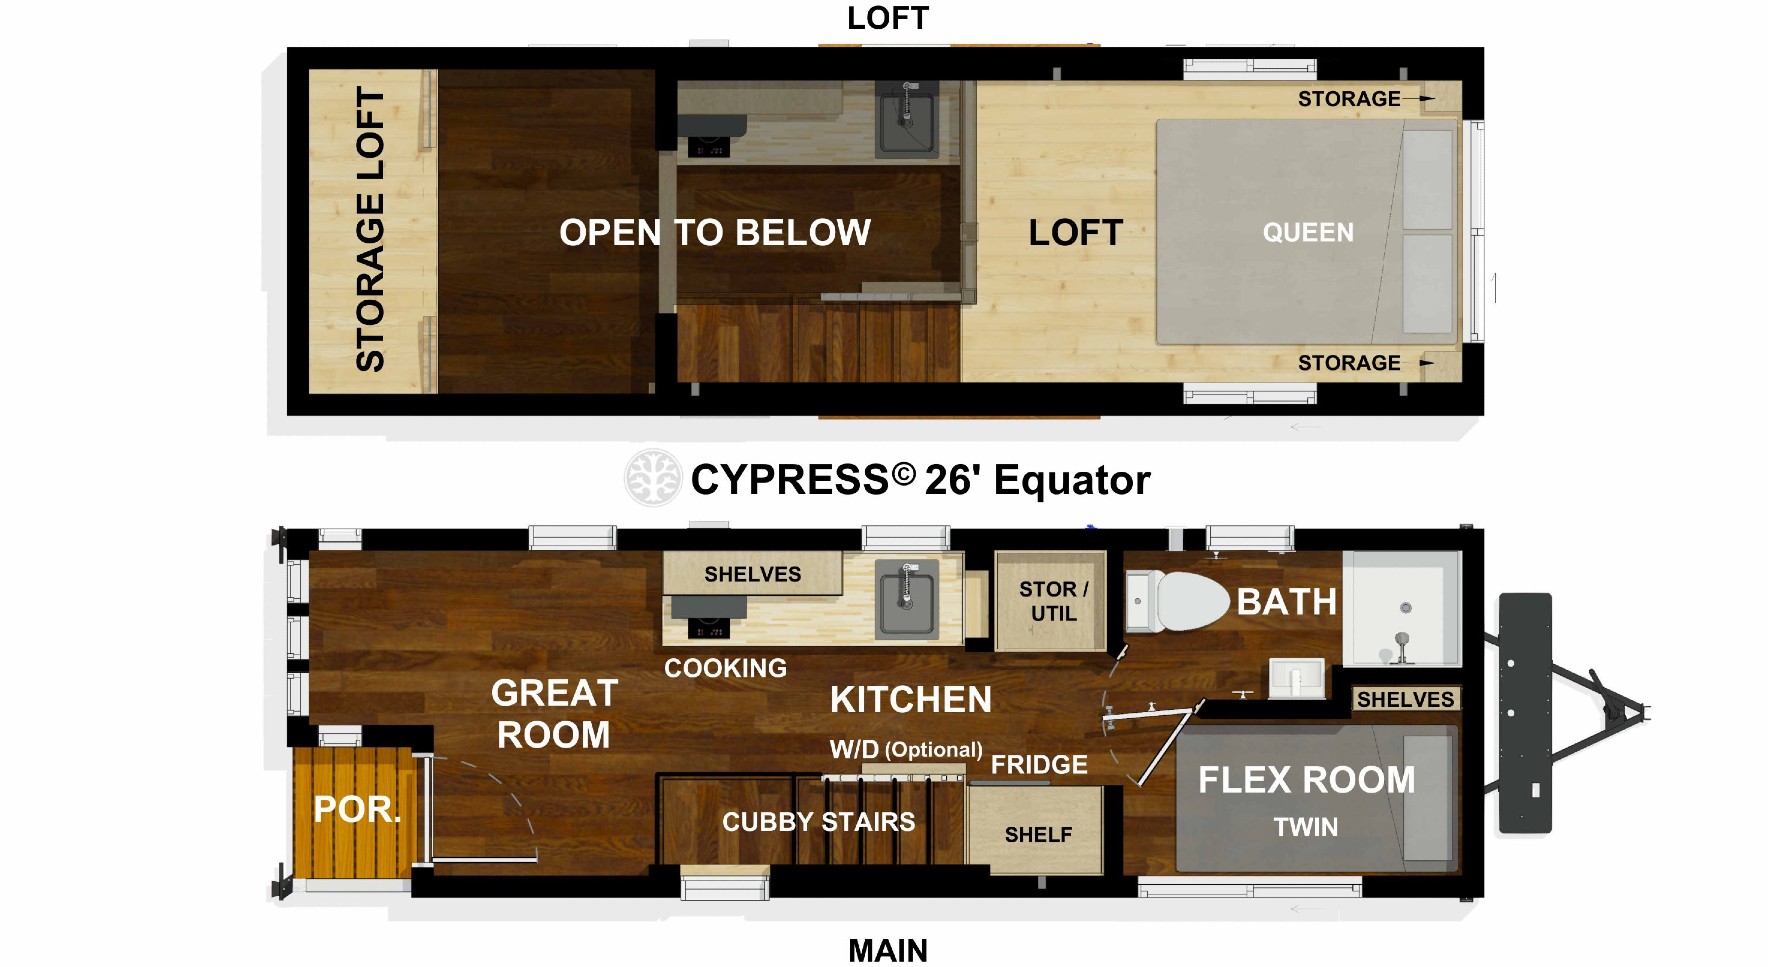 Cypress Equator Floor Plan